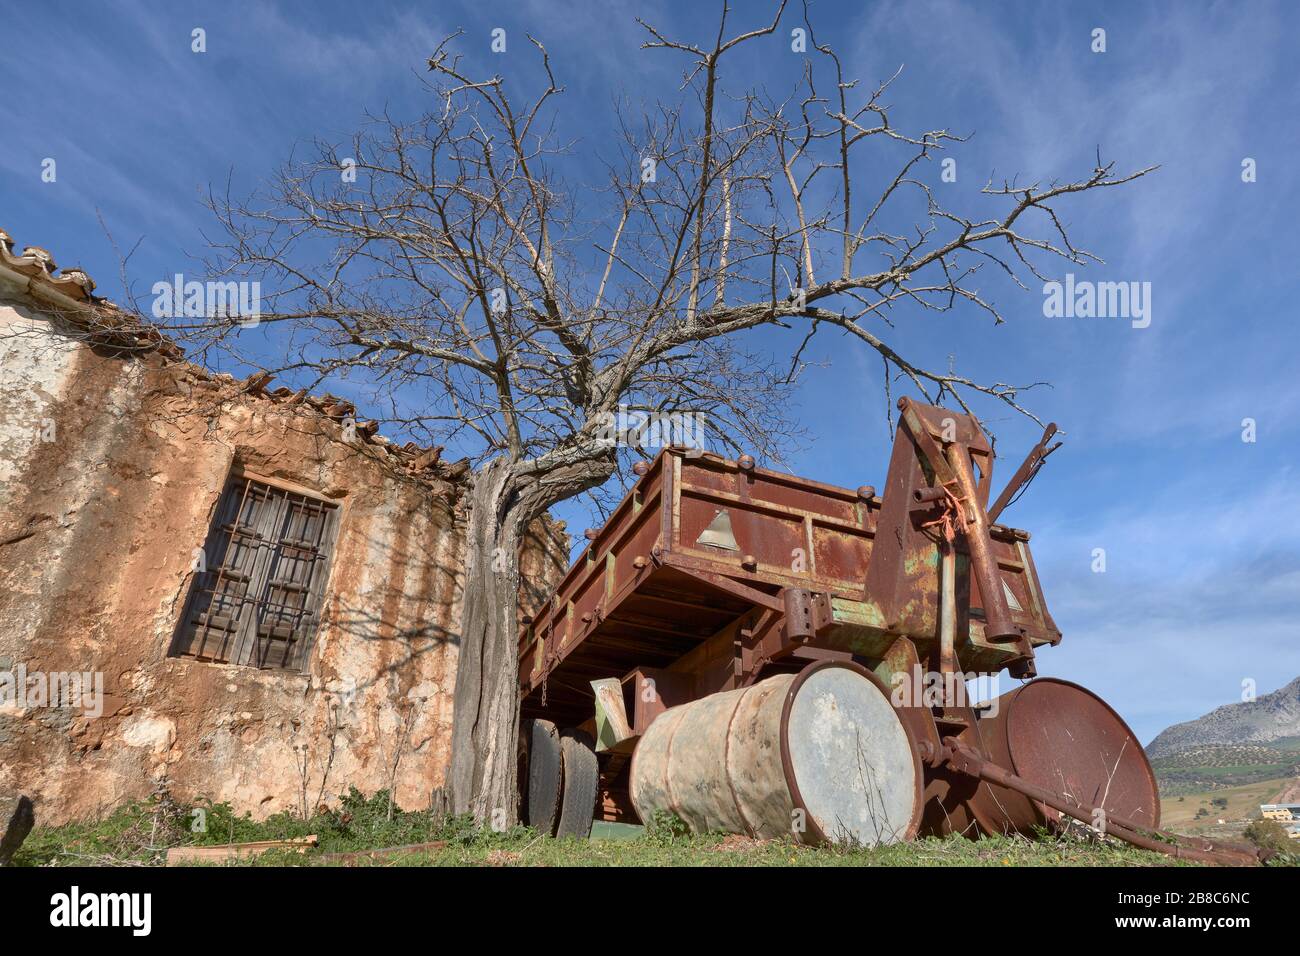 Ferme ruinée avec machines agricoles à Casabermeja, Malaga. Espagne. Banque D'Images